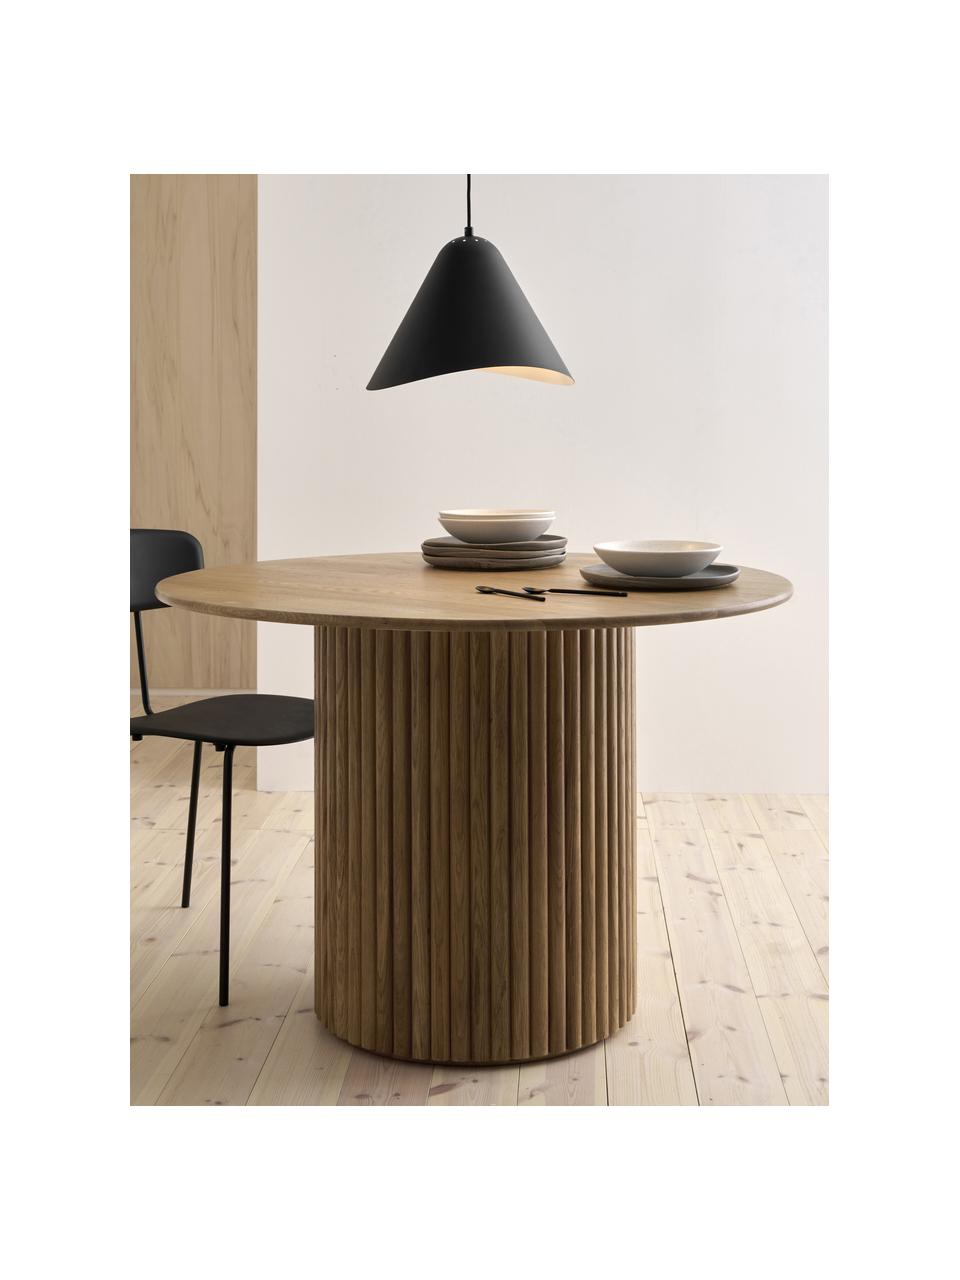 Okrúhly drevený jedálenský stôl Janina, Ø 110 cm, Masívne dubové drevo, MDF-doska strednej hustoty, lakovaná, Dubové drevo, lakované, Ø 110 x V 75 cm